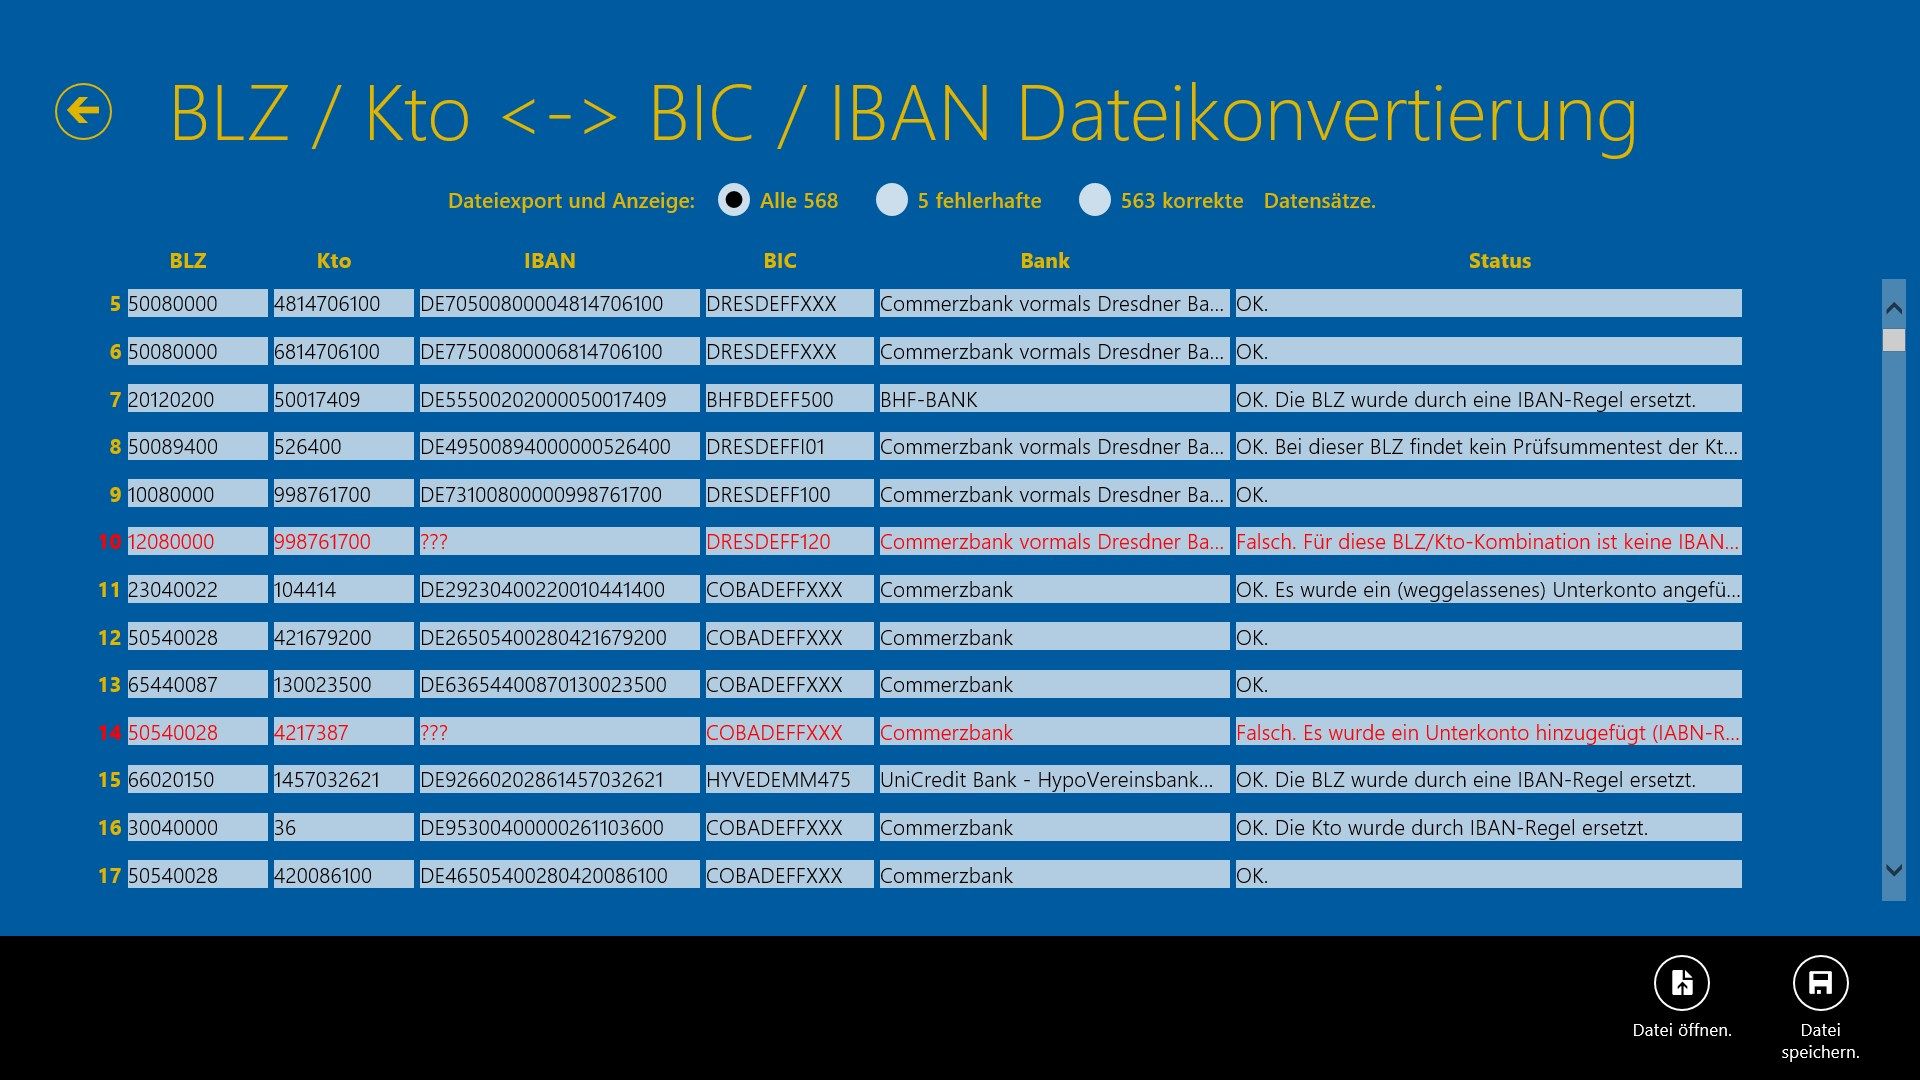 Bildschirmausgabe der Dateikonvertierung BLZ, Kto nach IBAN und BIC.